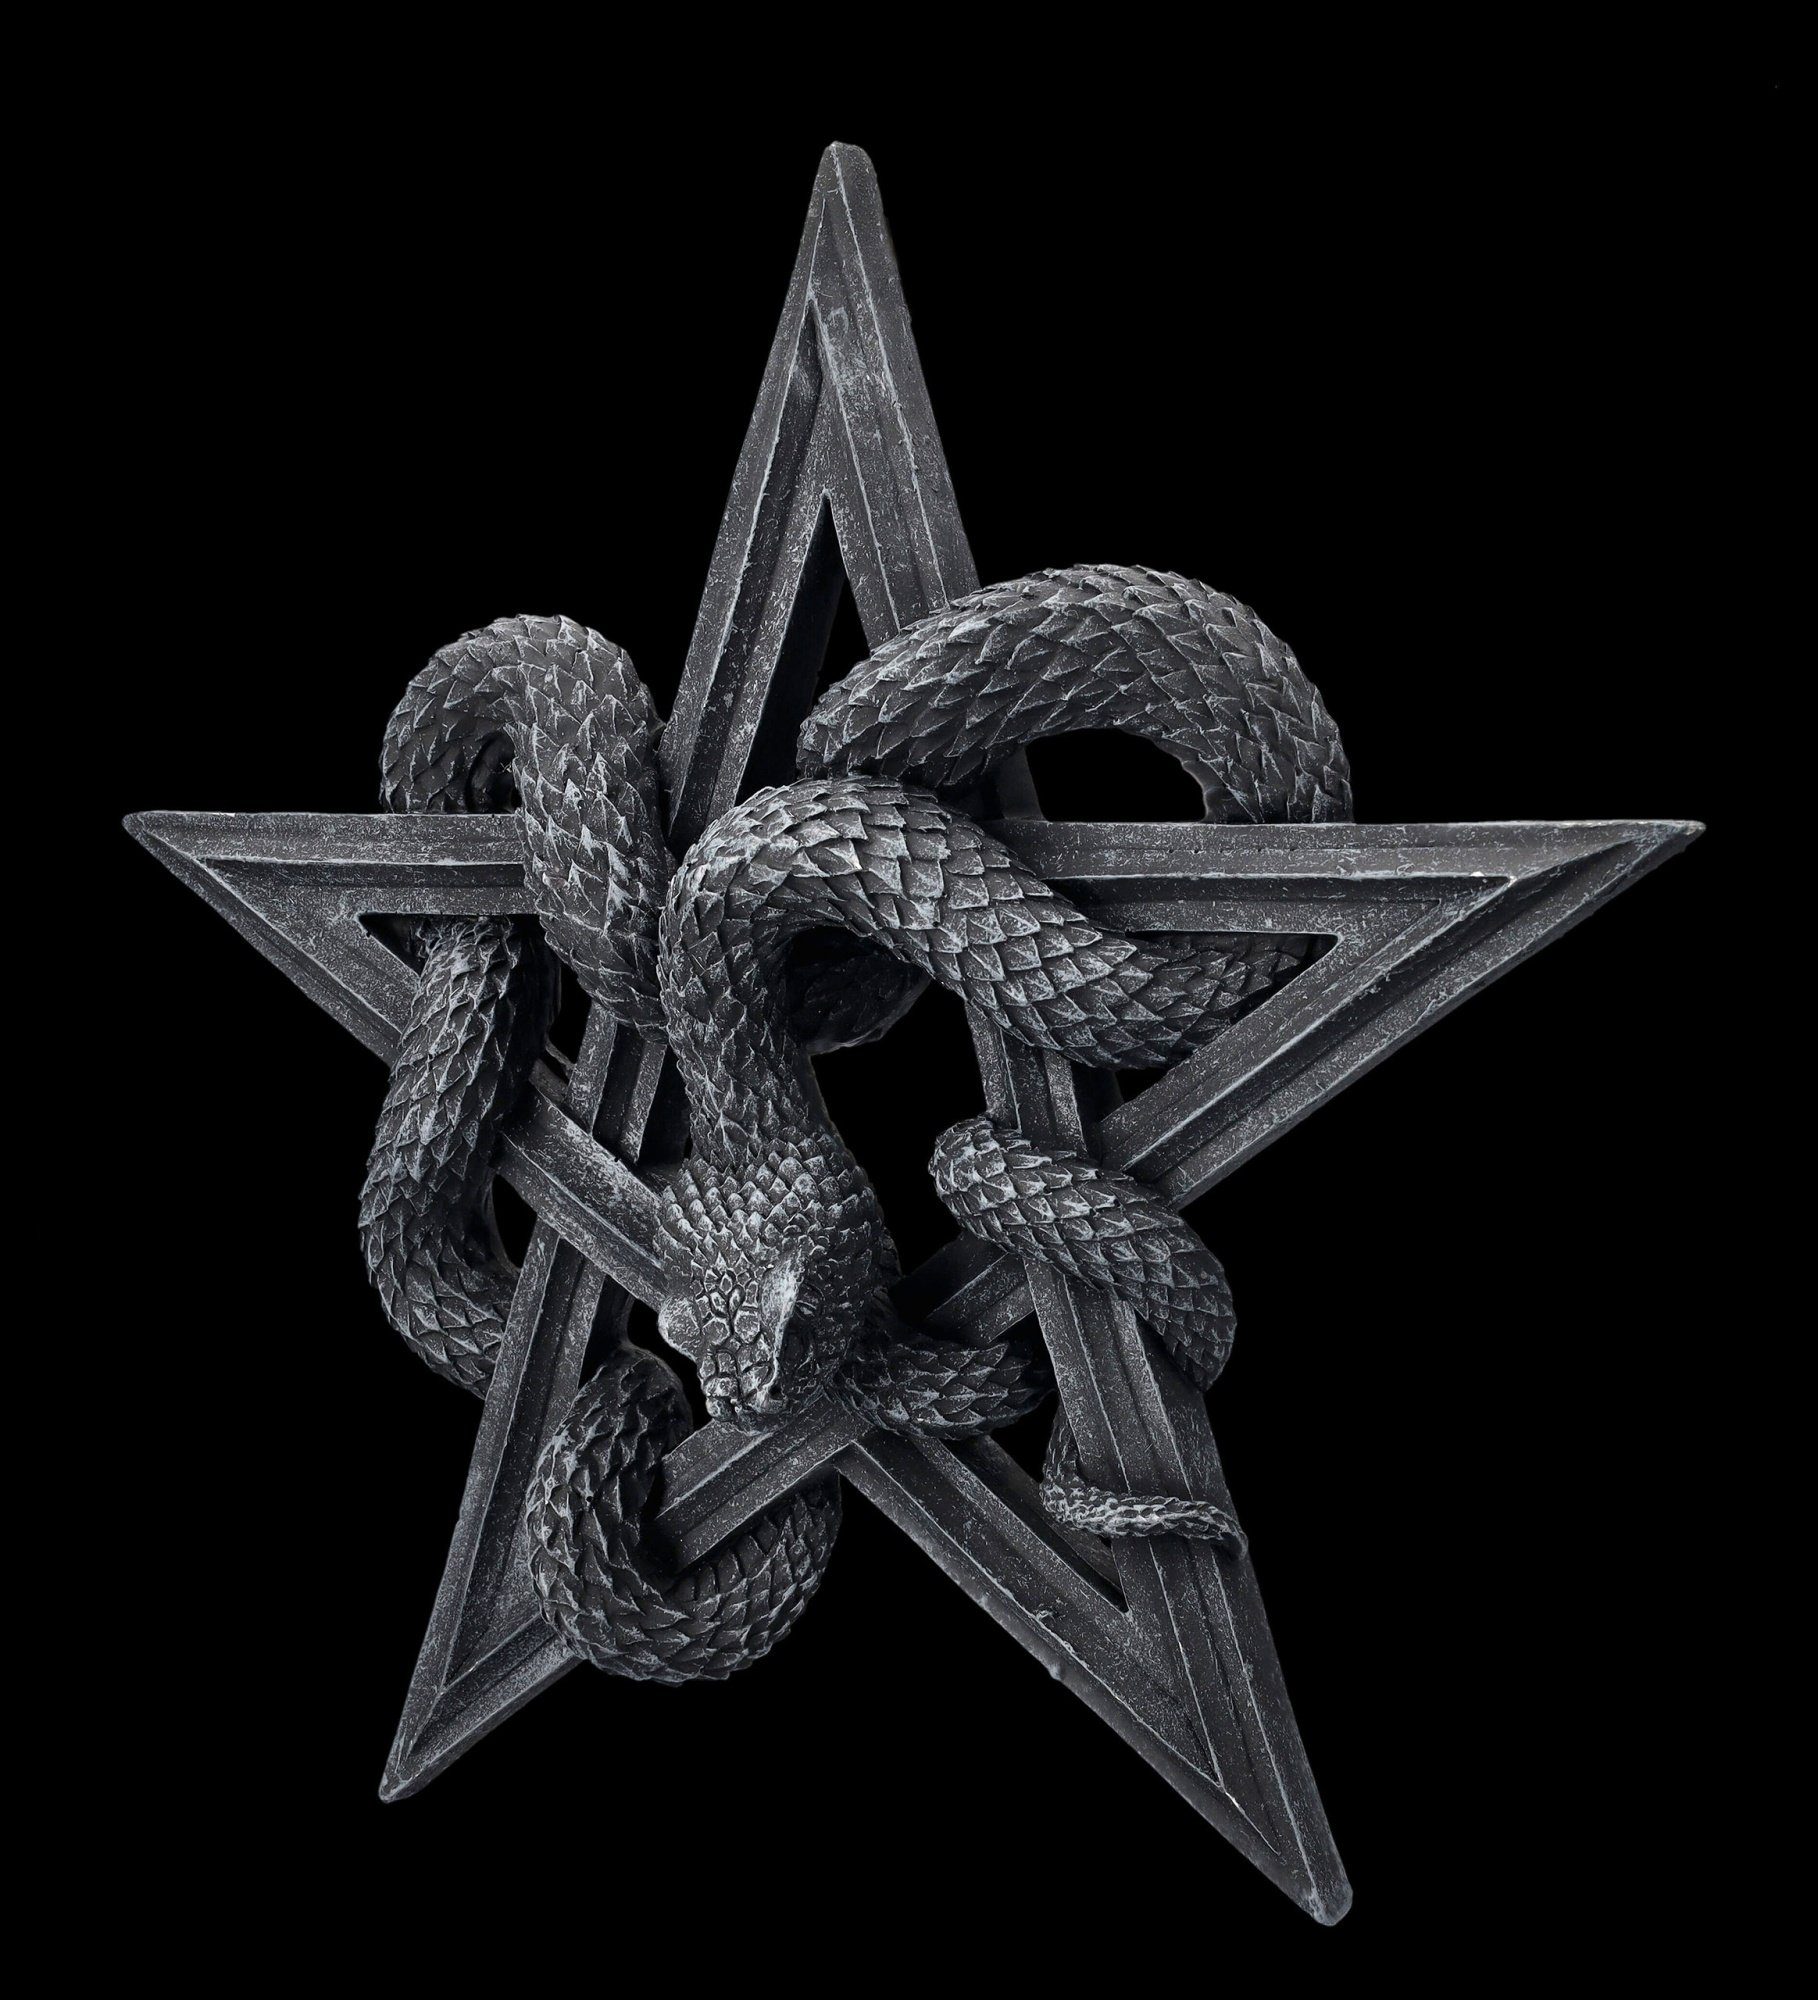 Worship Serpents Wanddekoobjekt mit Pentagramm Gothic - Wandrelief - Fantasy Shop Dekoration Schlangen Figuren GmbH